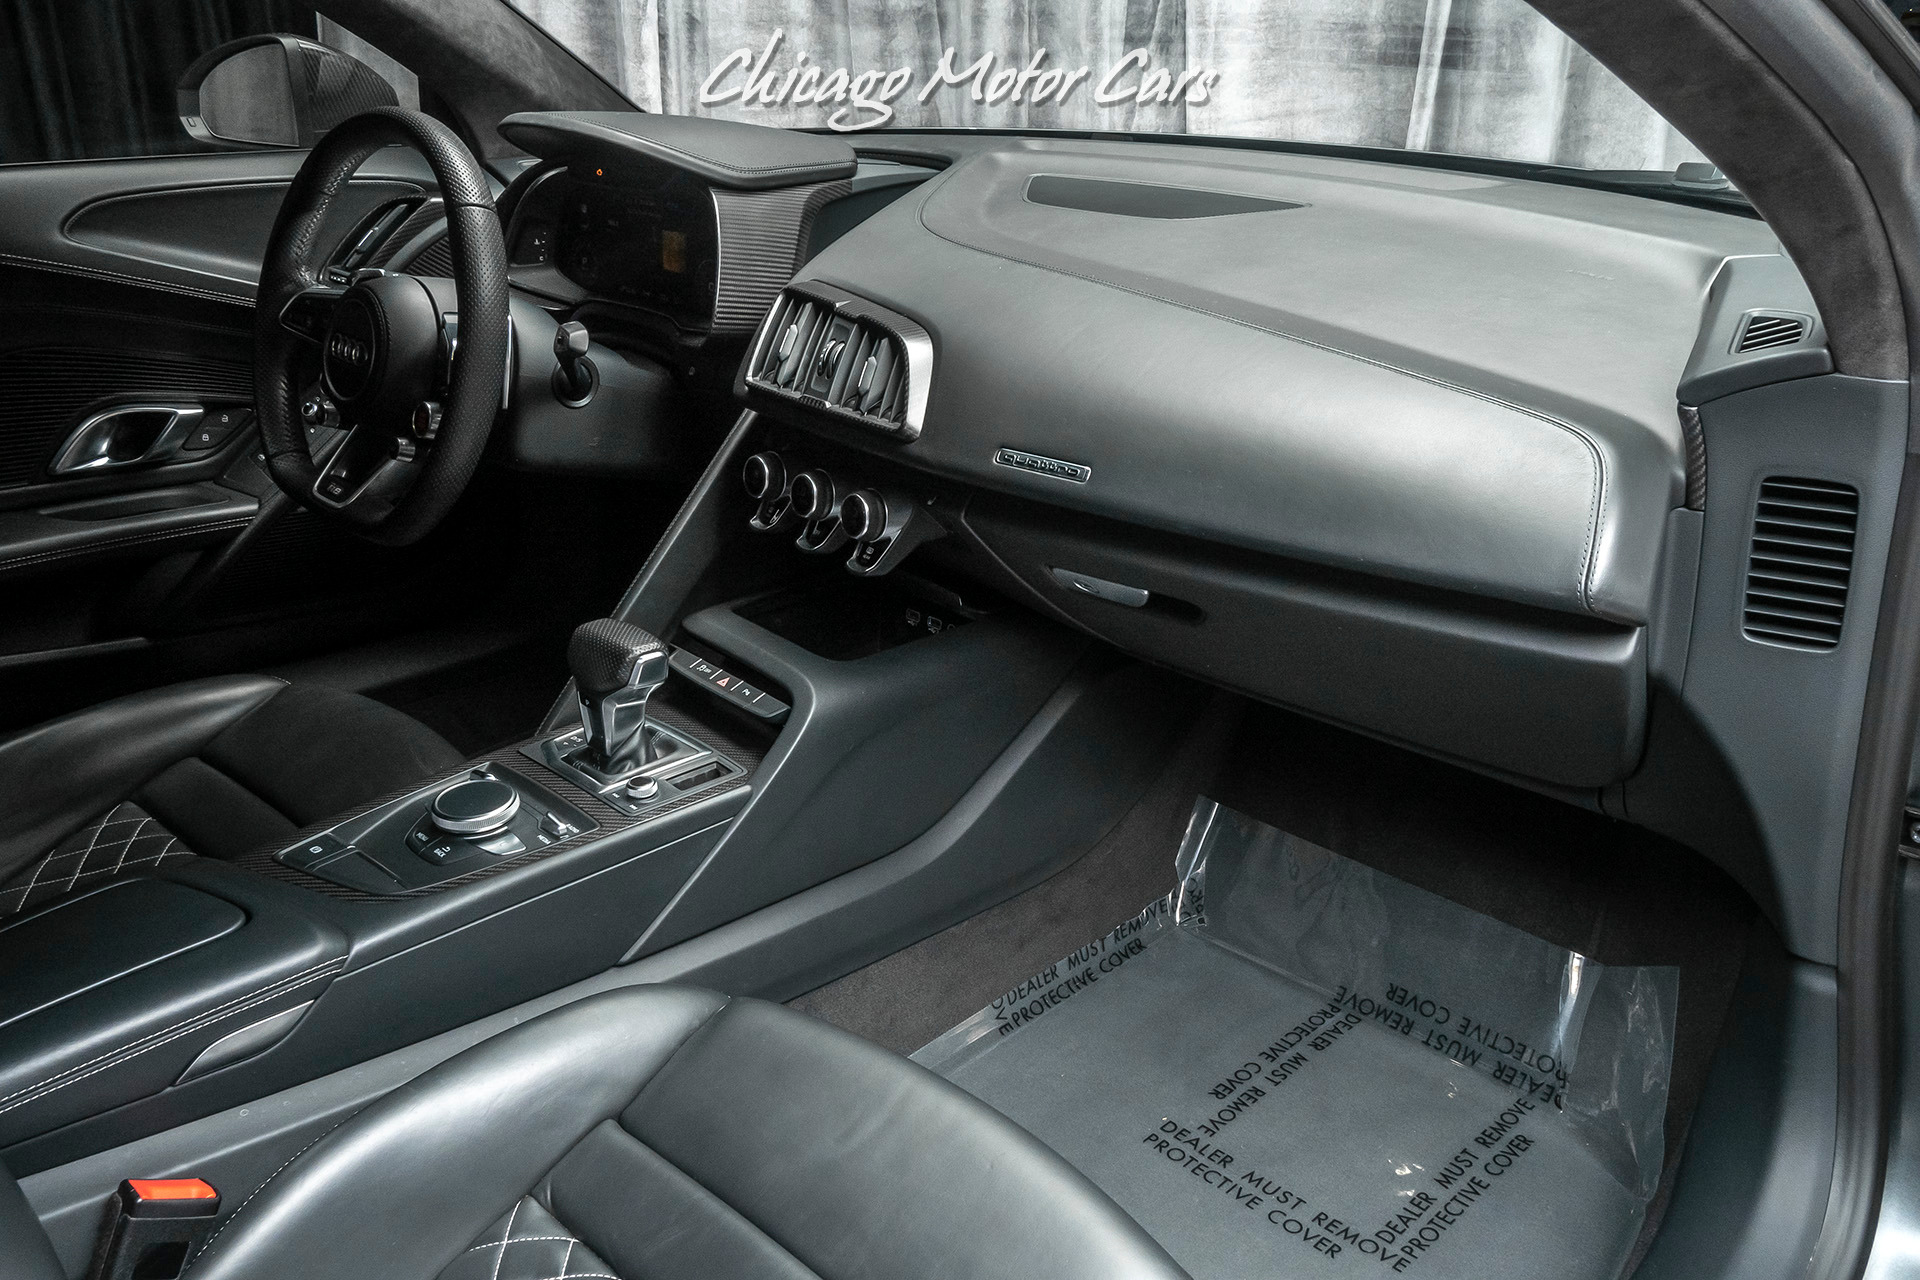 Used-2017-Audi-R8-V10-Plus-quattro-S-tronic-Coupe-MSRP-210K-FACTORY-MATTE-PAINT